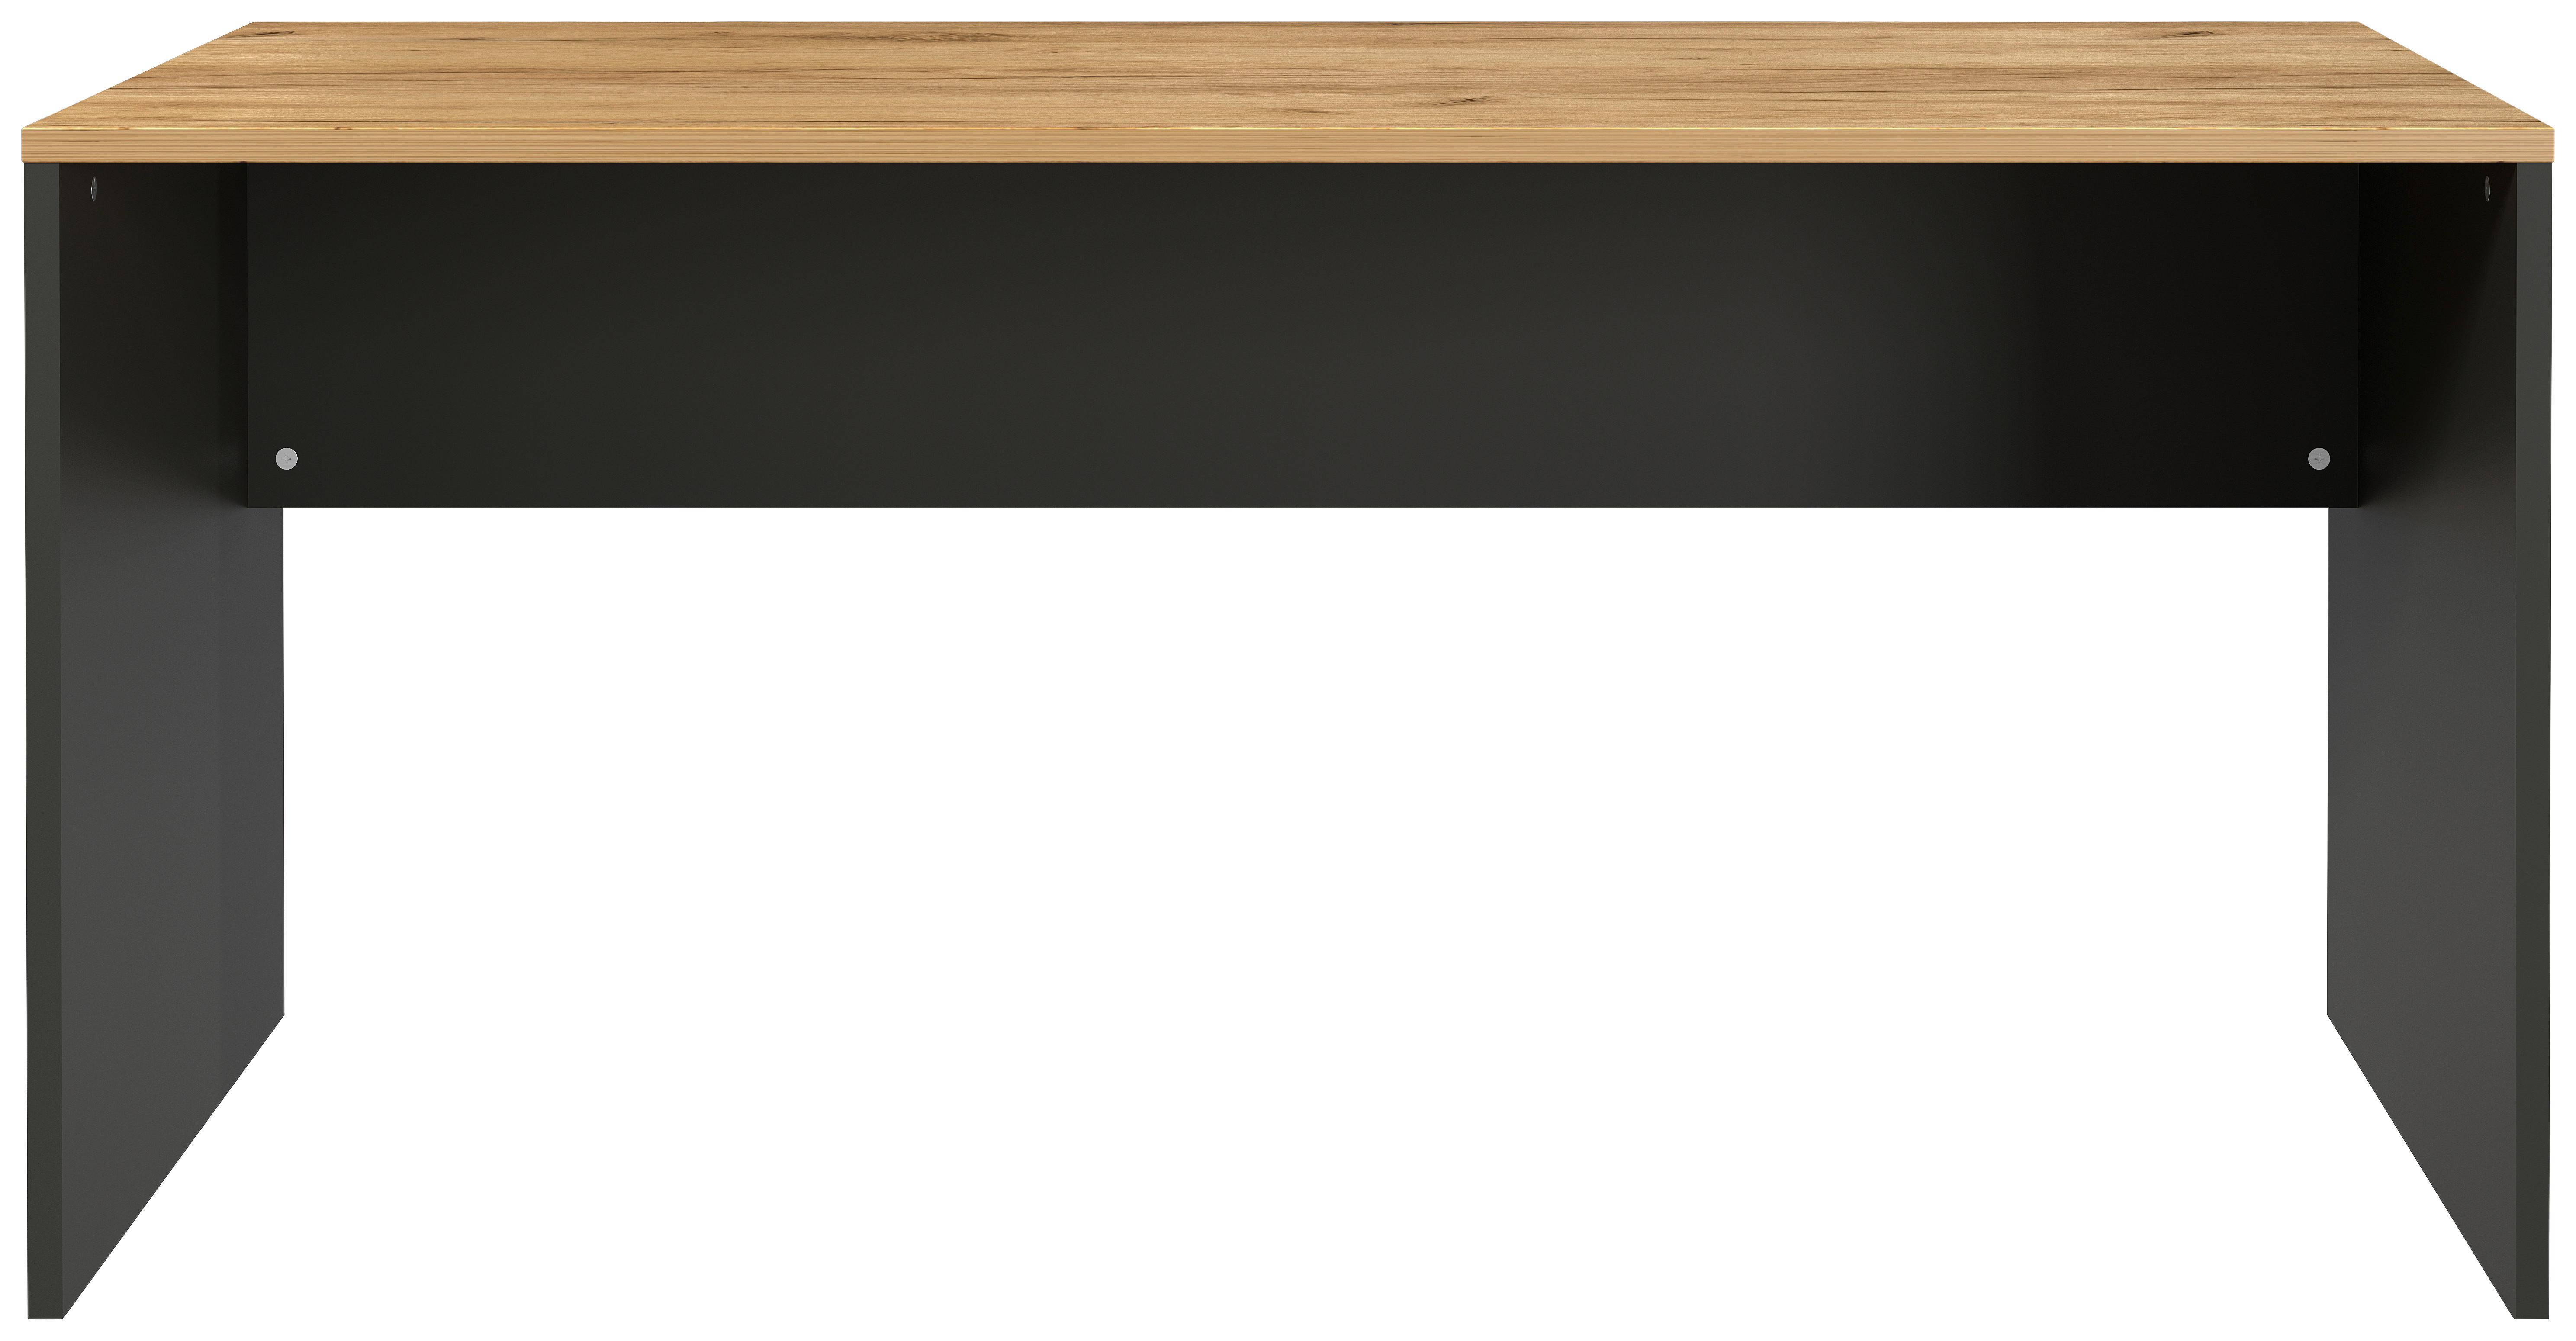 Schreibtisch B158cm H 75cm Lissabon Eichefarben - Eichefarben/Graphitfarben, MODERN, Holzwerkstoff (158/75/79cm) - Germania